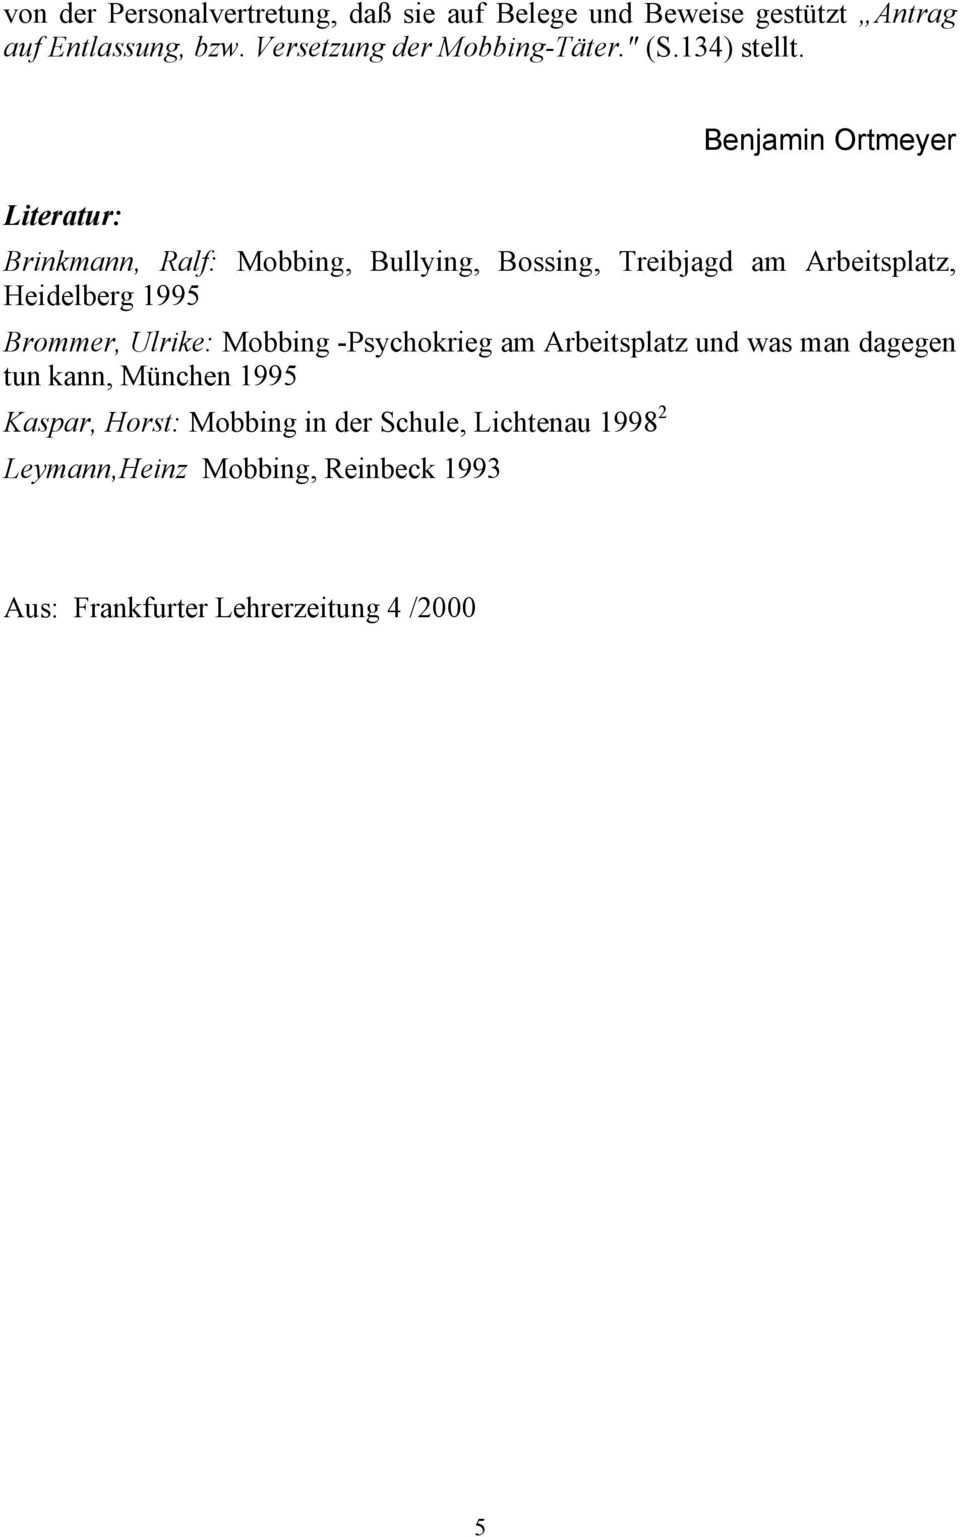 Literatur: Benjamin Ortmeyer Brinkmann, Ralf: Mobbing, Bullying, Bossing, Treibjagd am Arbeitsplatz, Heidelberg 1995